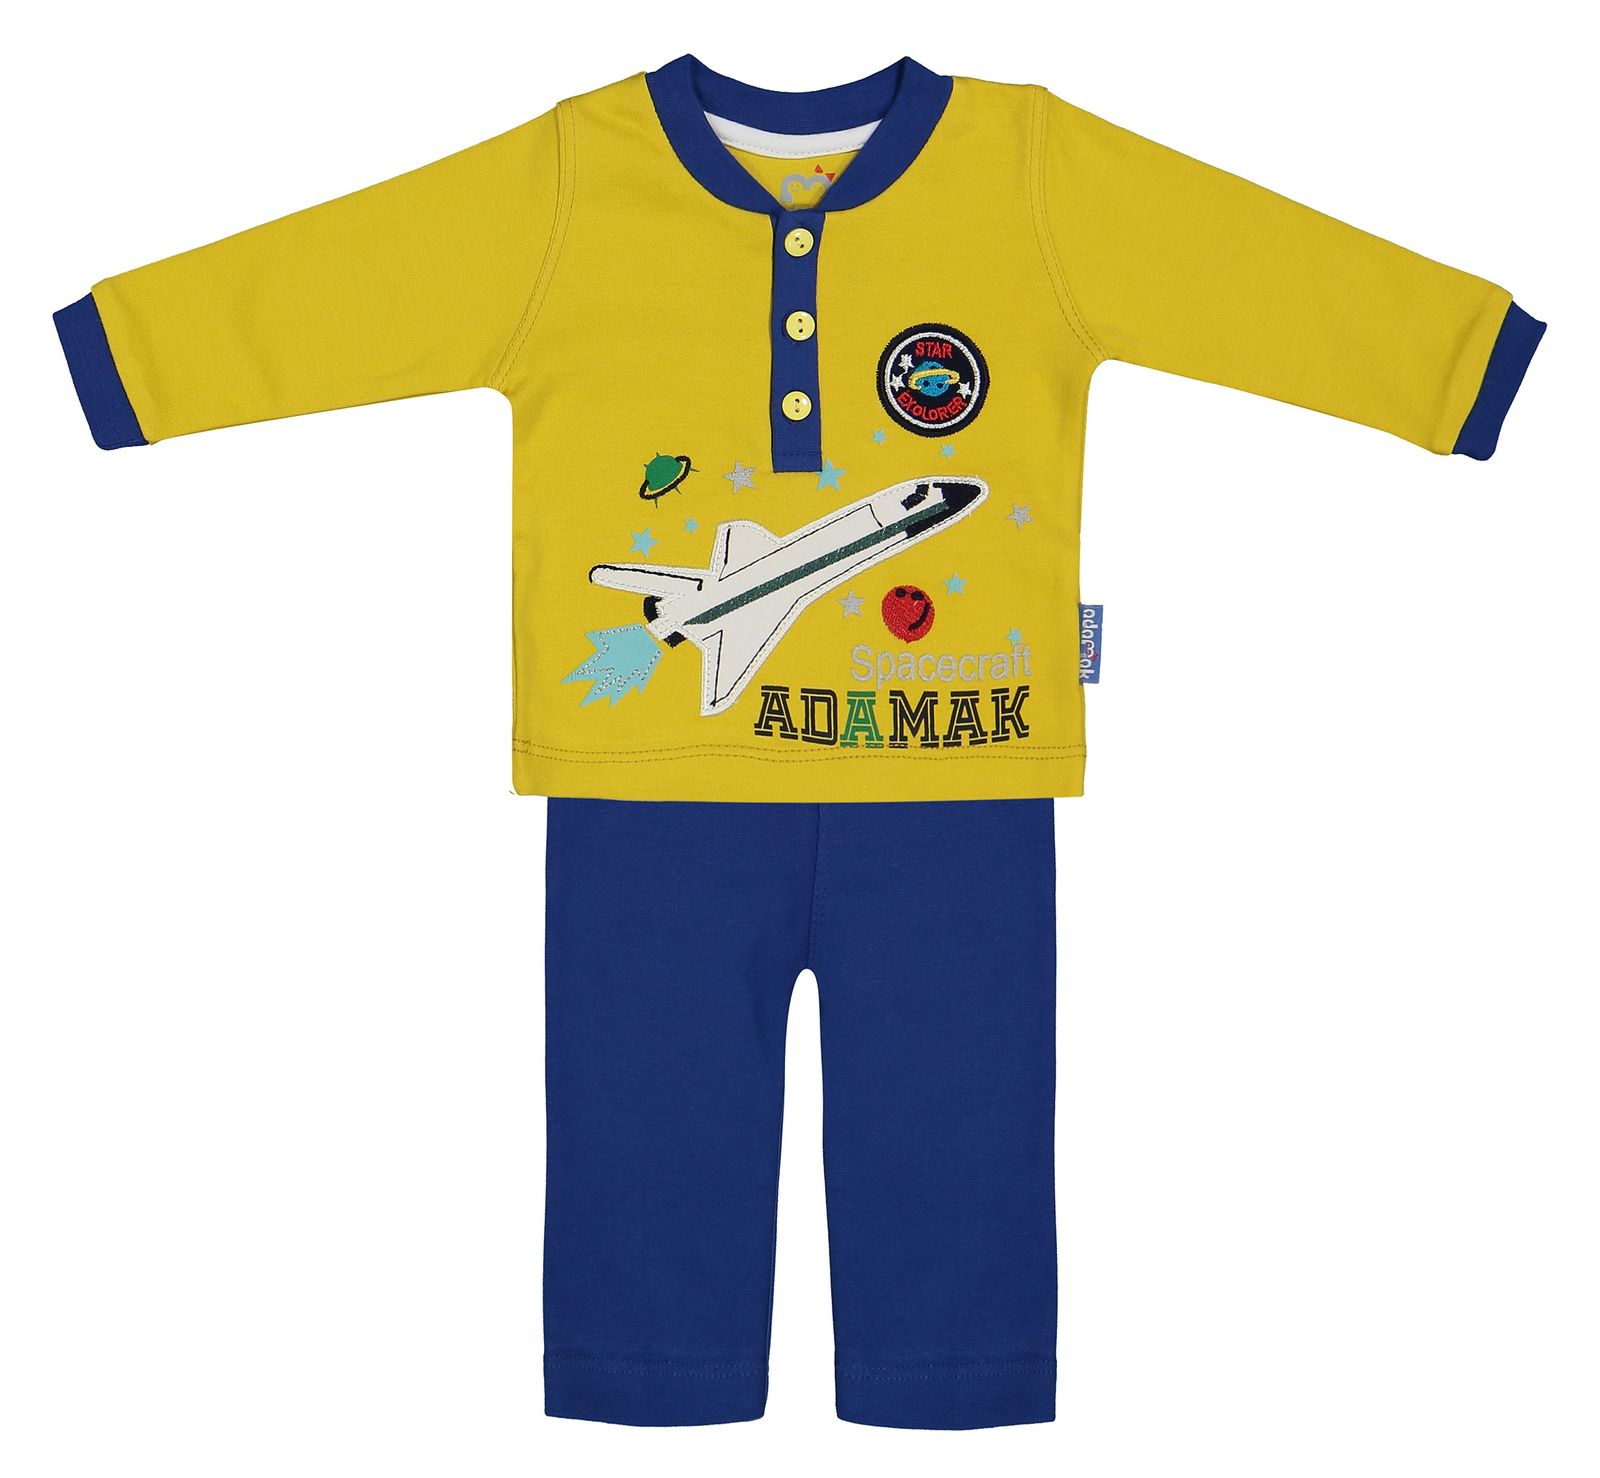 ست تی شرت و شلوار نوزادی آدمک مدل 2171101-15 - خردلی - 1